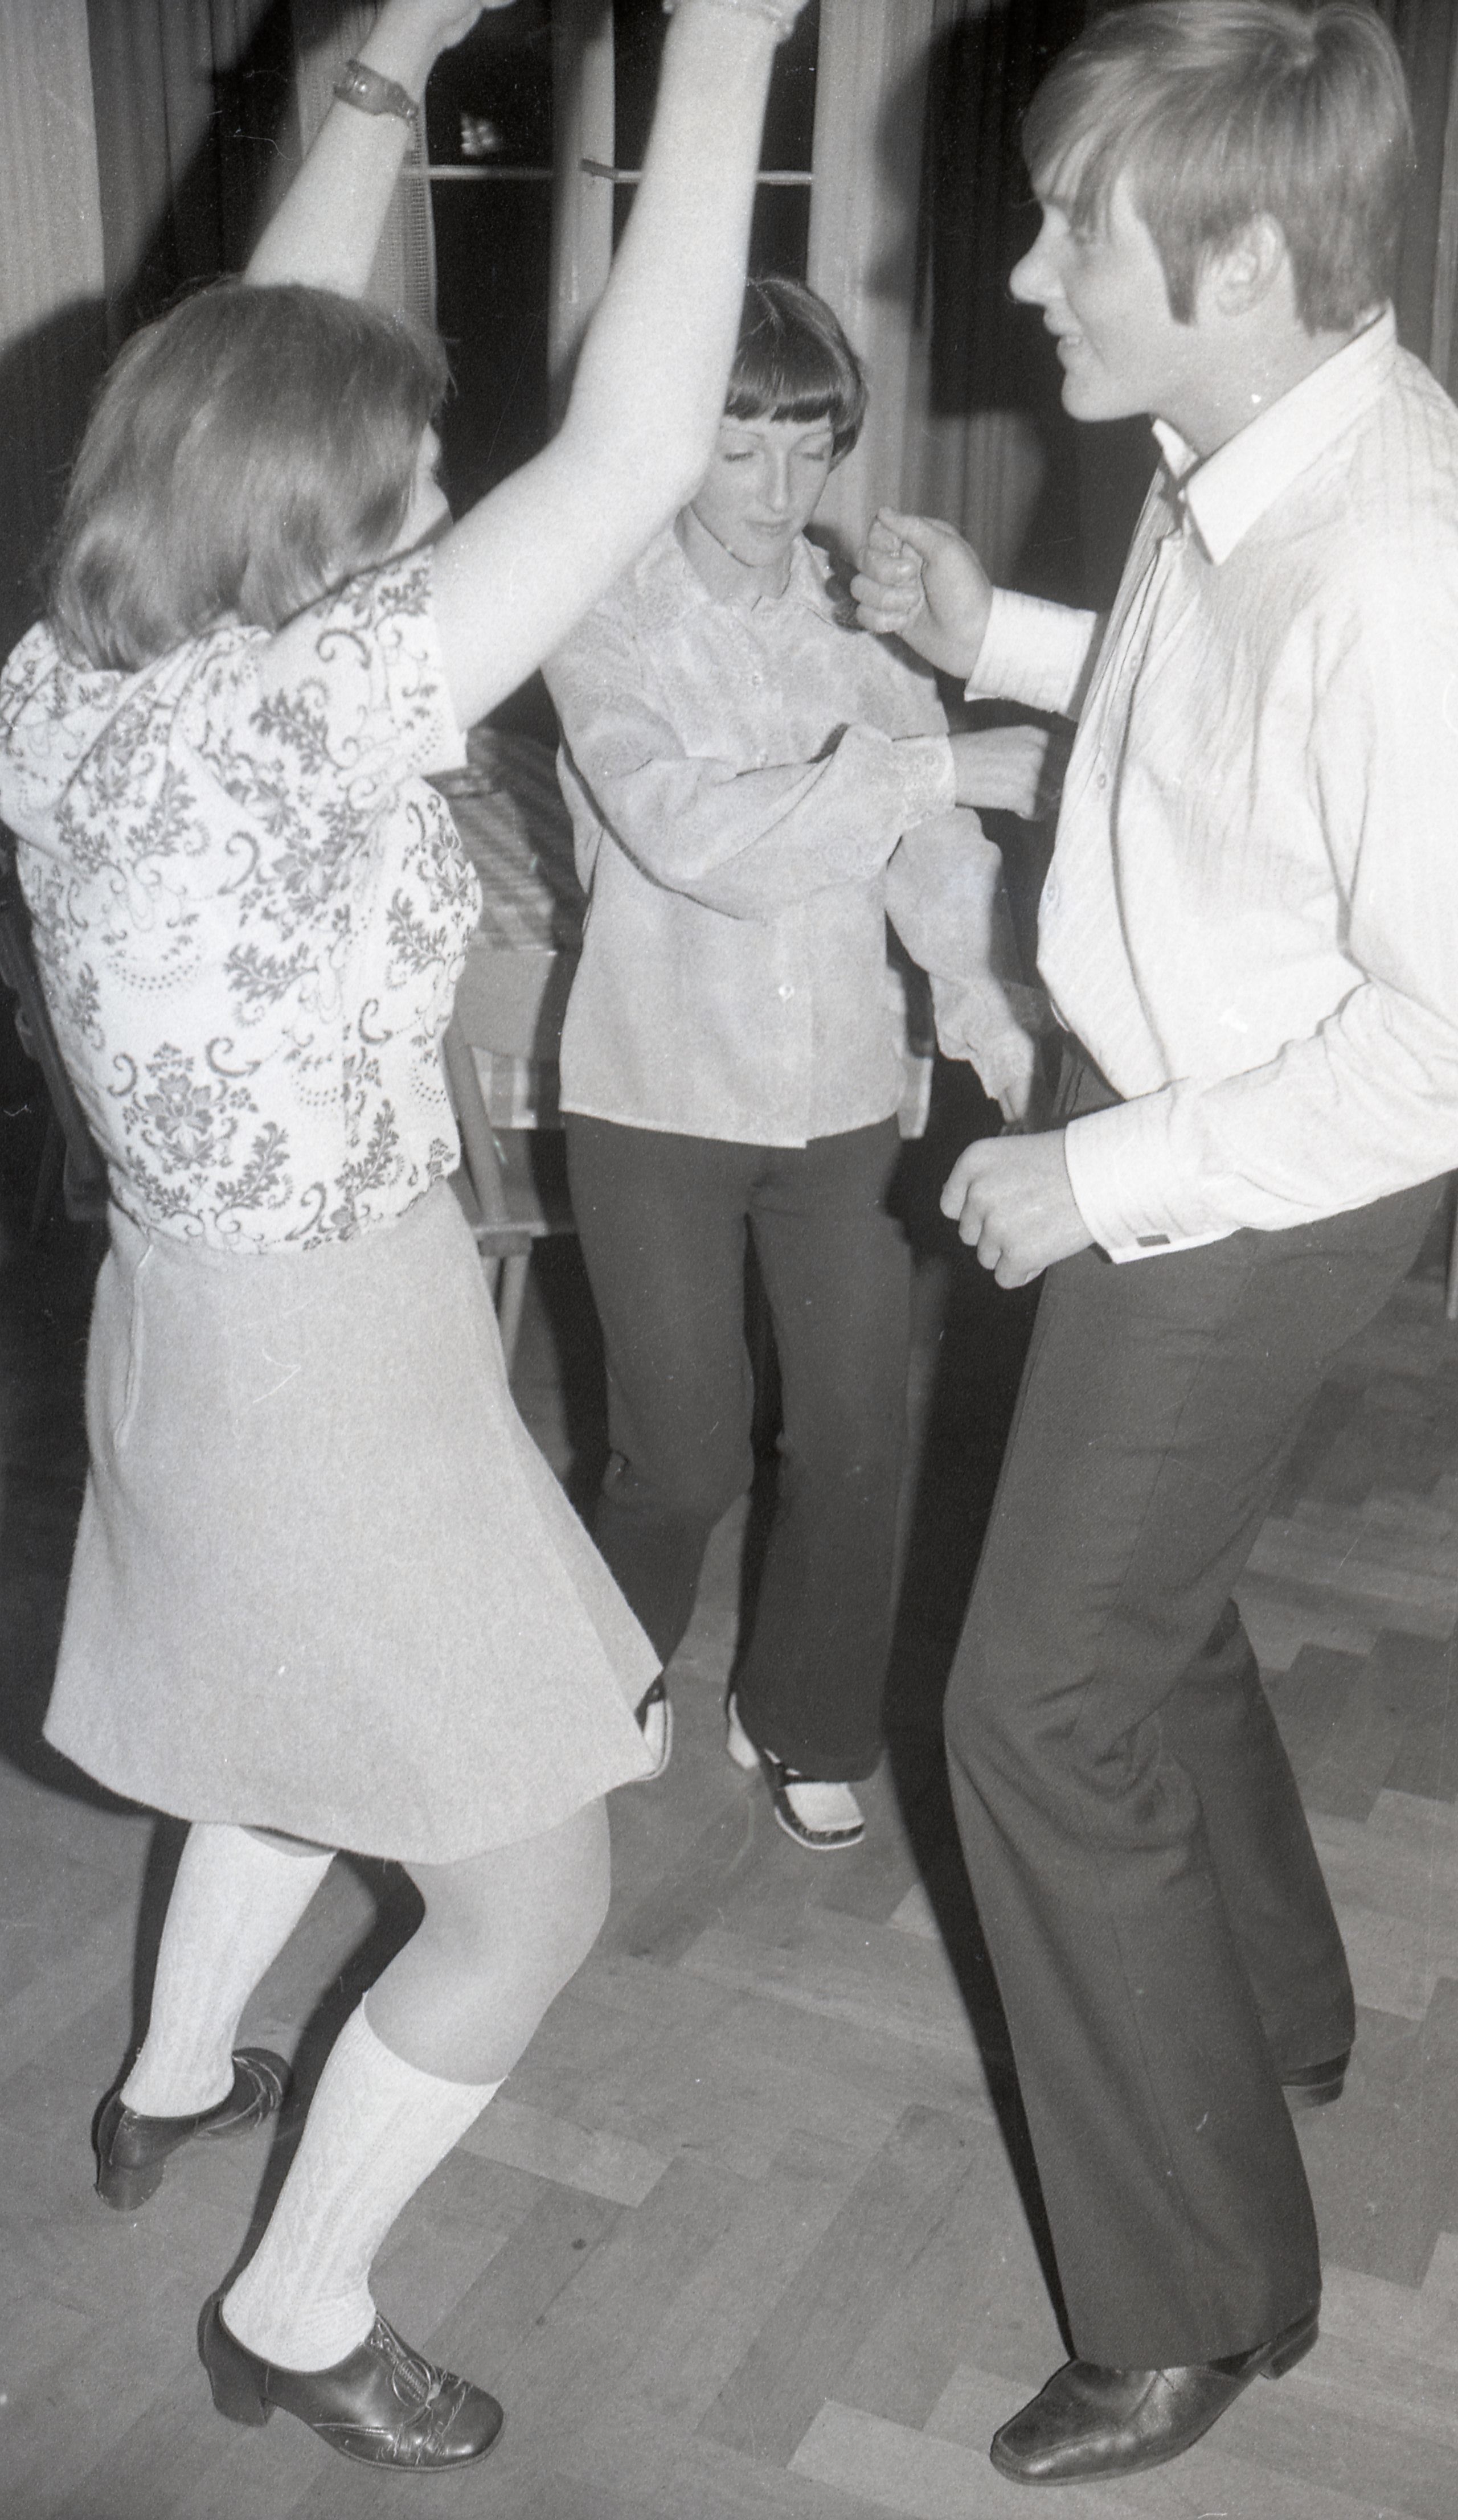 Tanzveranstaltung, um 1975 (Stadt Schiltach CC BY-NC-ND)